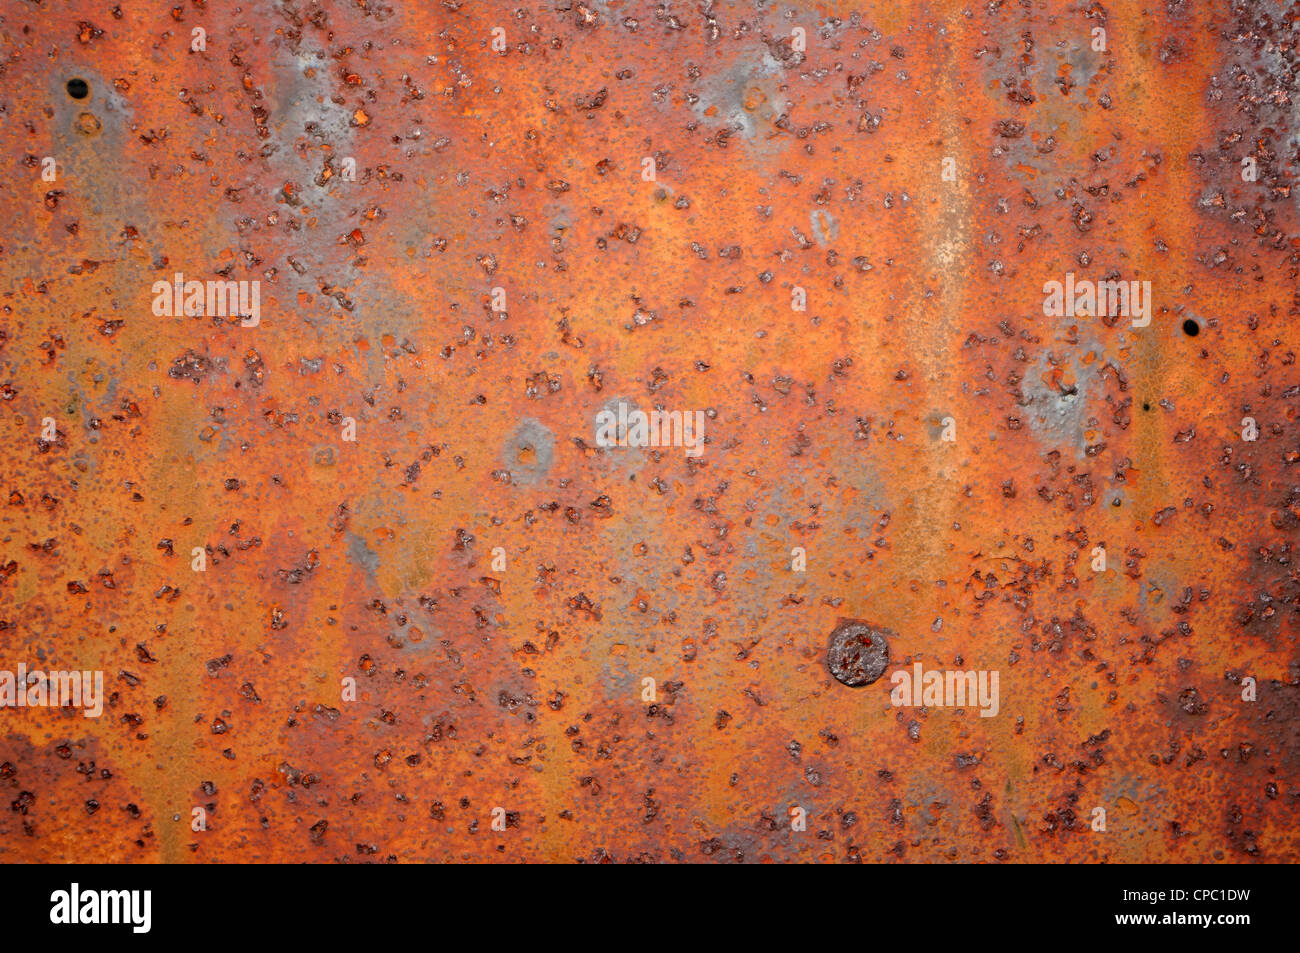 Rostige Metall Oberfläche. Stockfoto